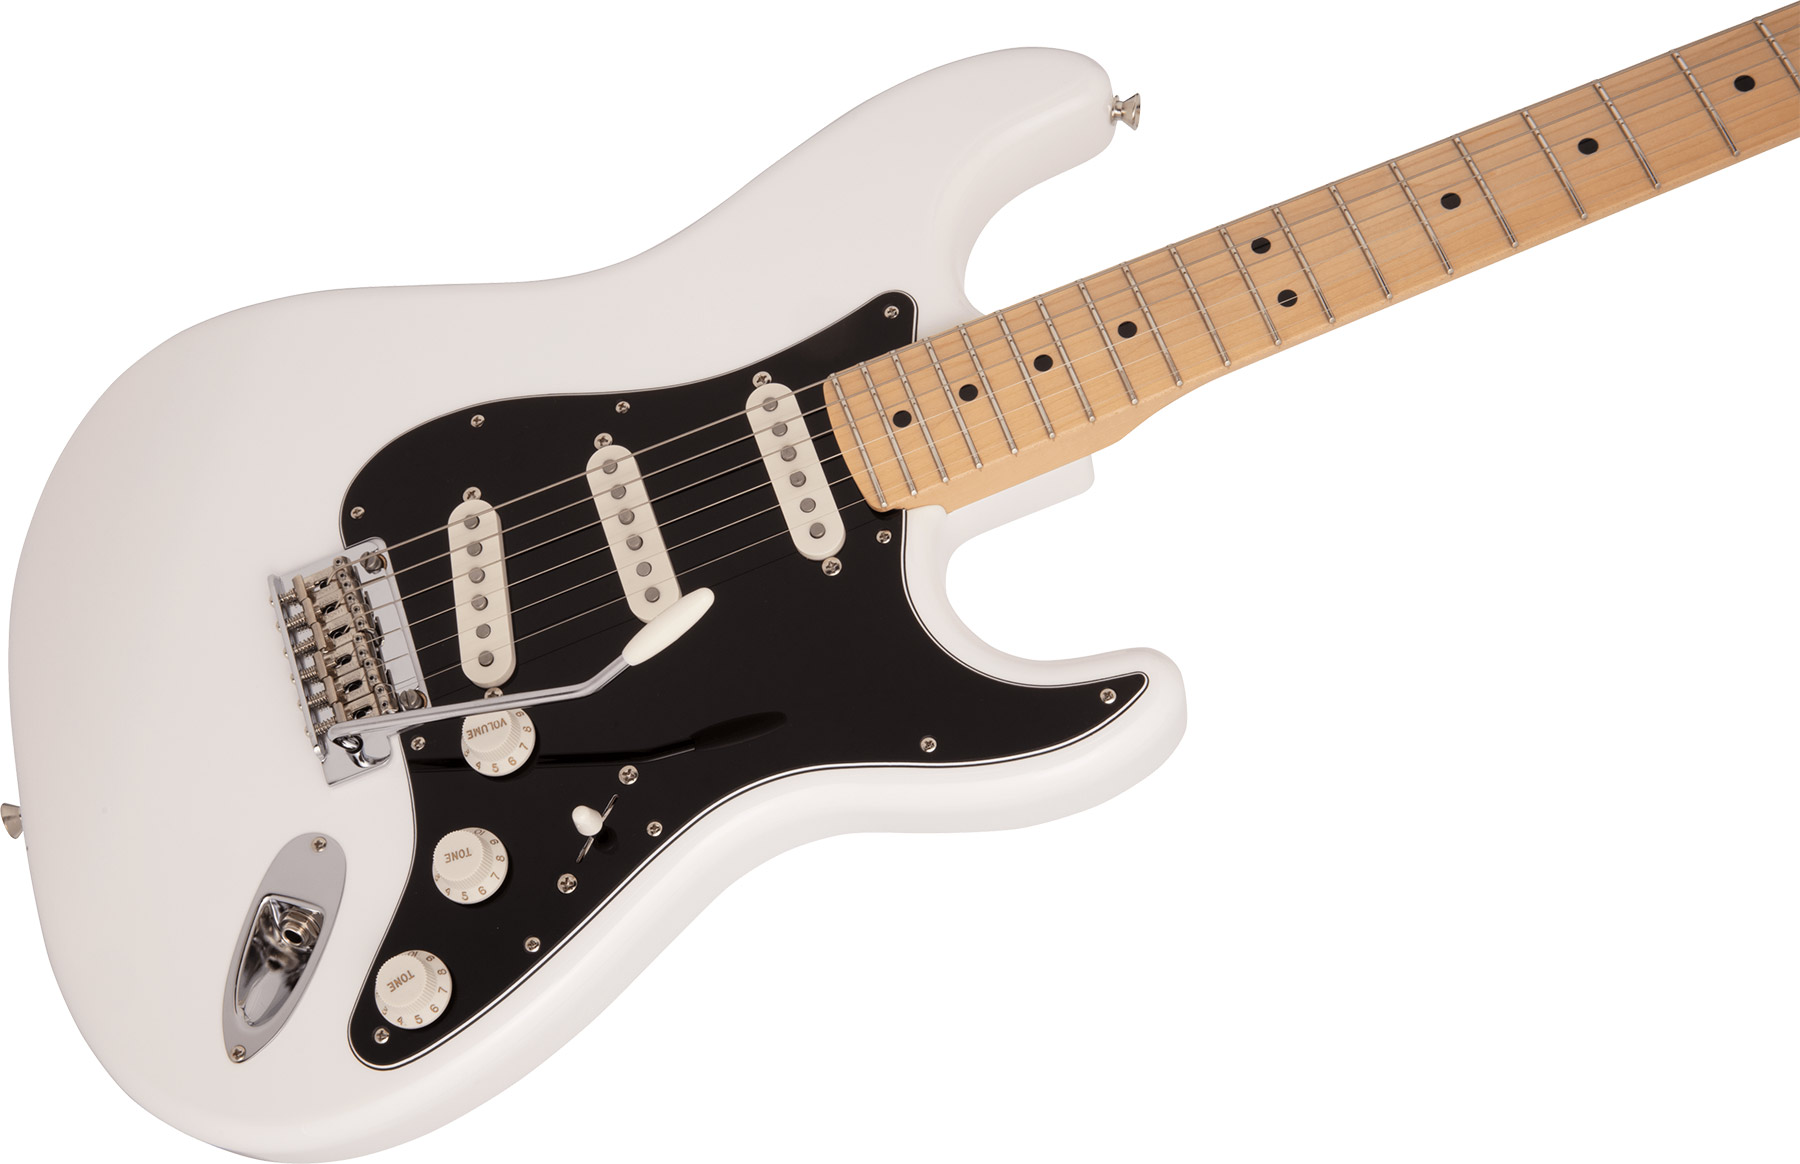 Fender Strat Hybrid Ii Mij Jap 3s Trem Mn - Arctic White - Str shape electric guitar - Variation 2